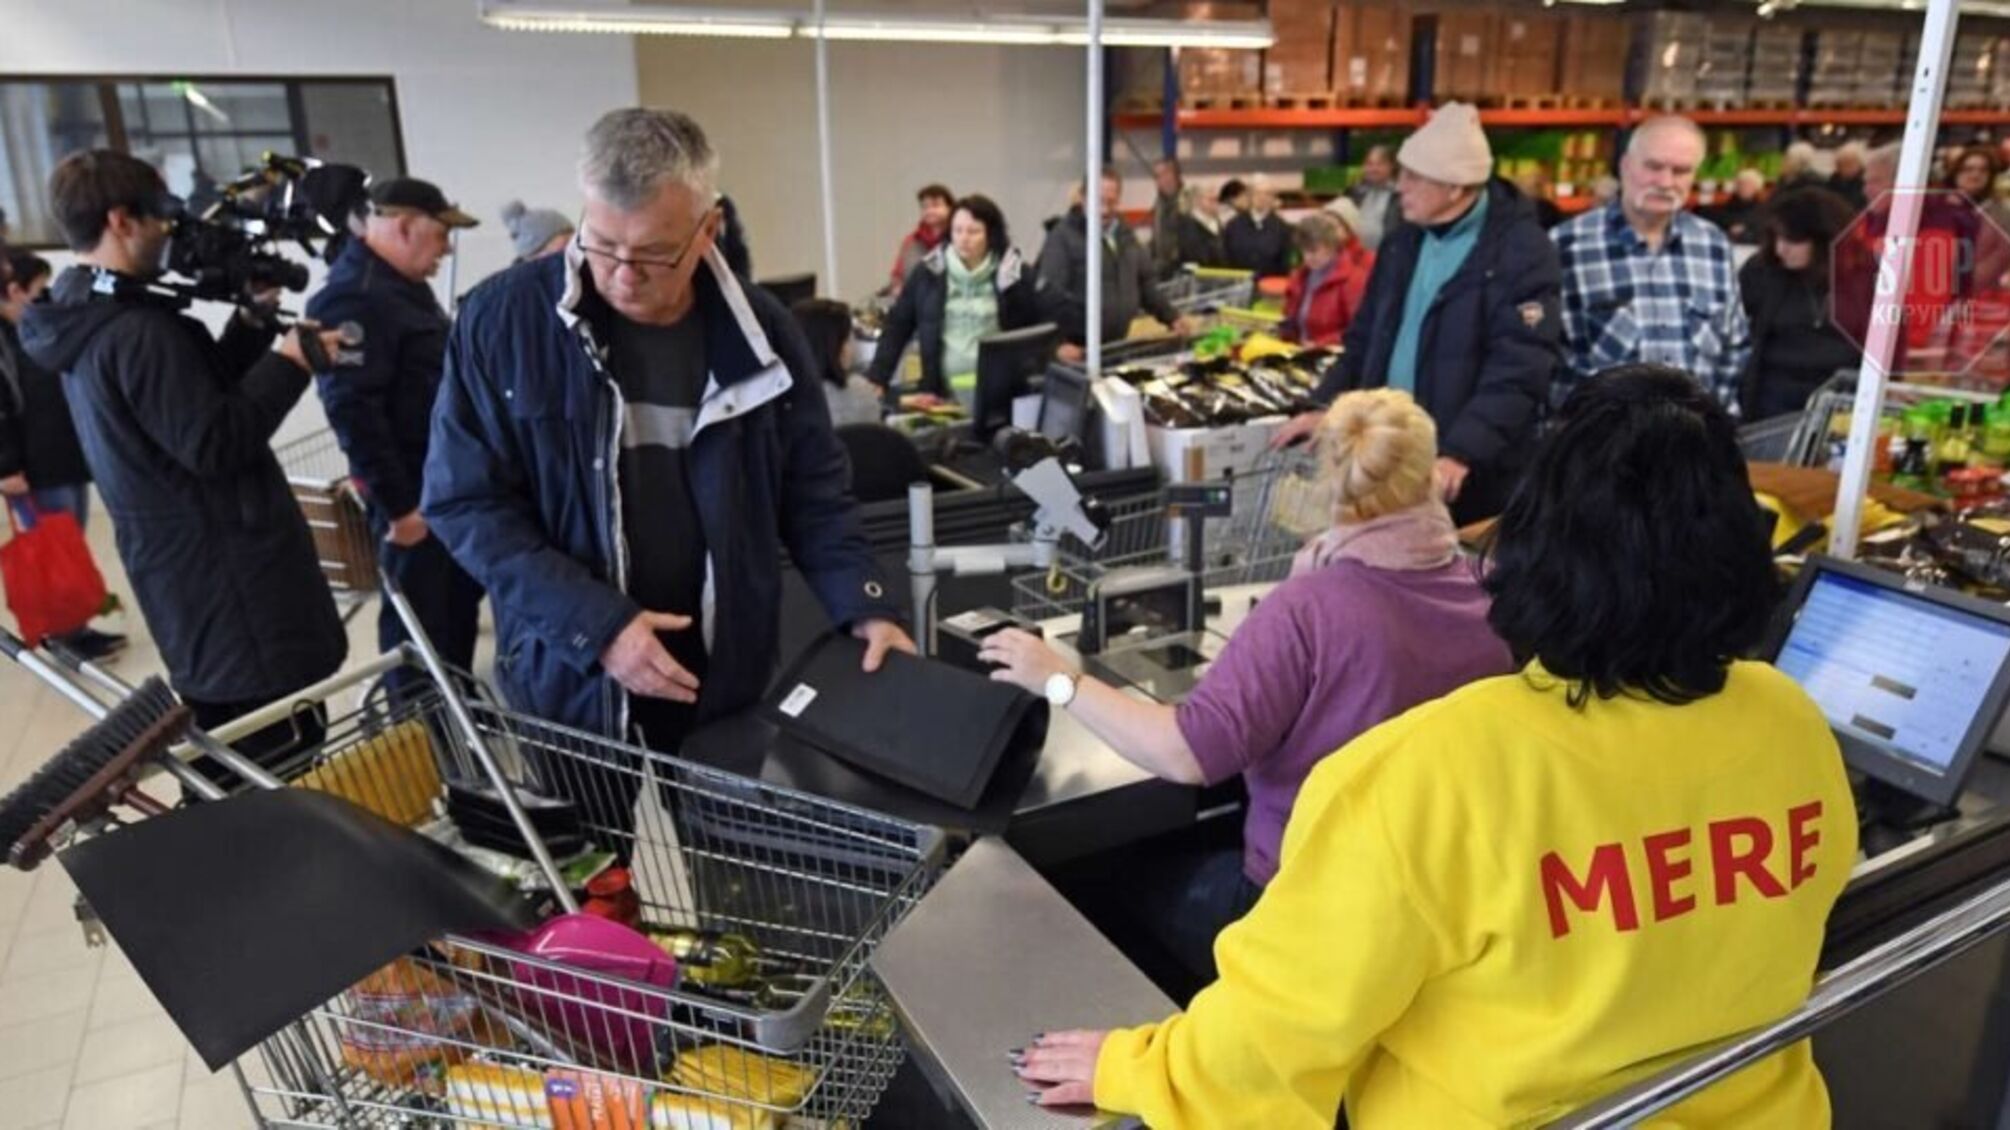 Данилов: Российские супермаркеты MERE больше не будут работать в Украине